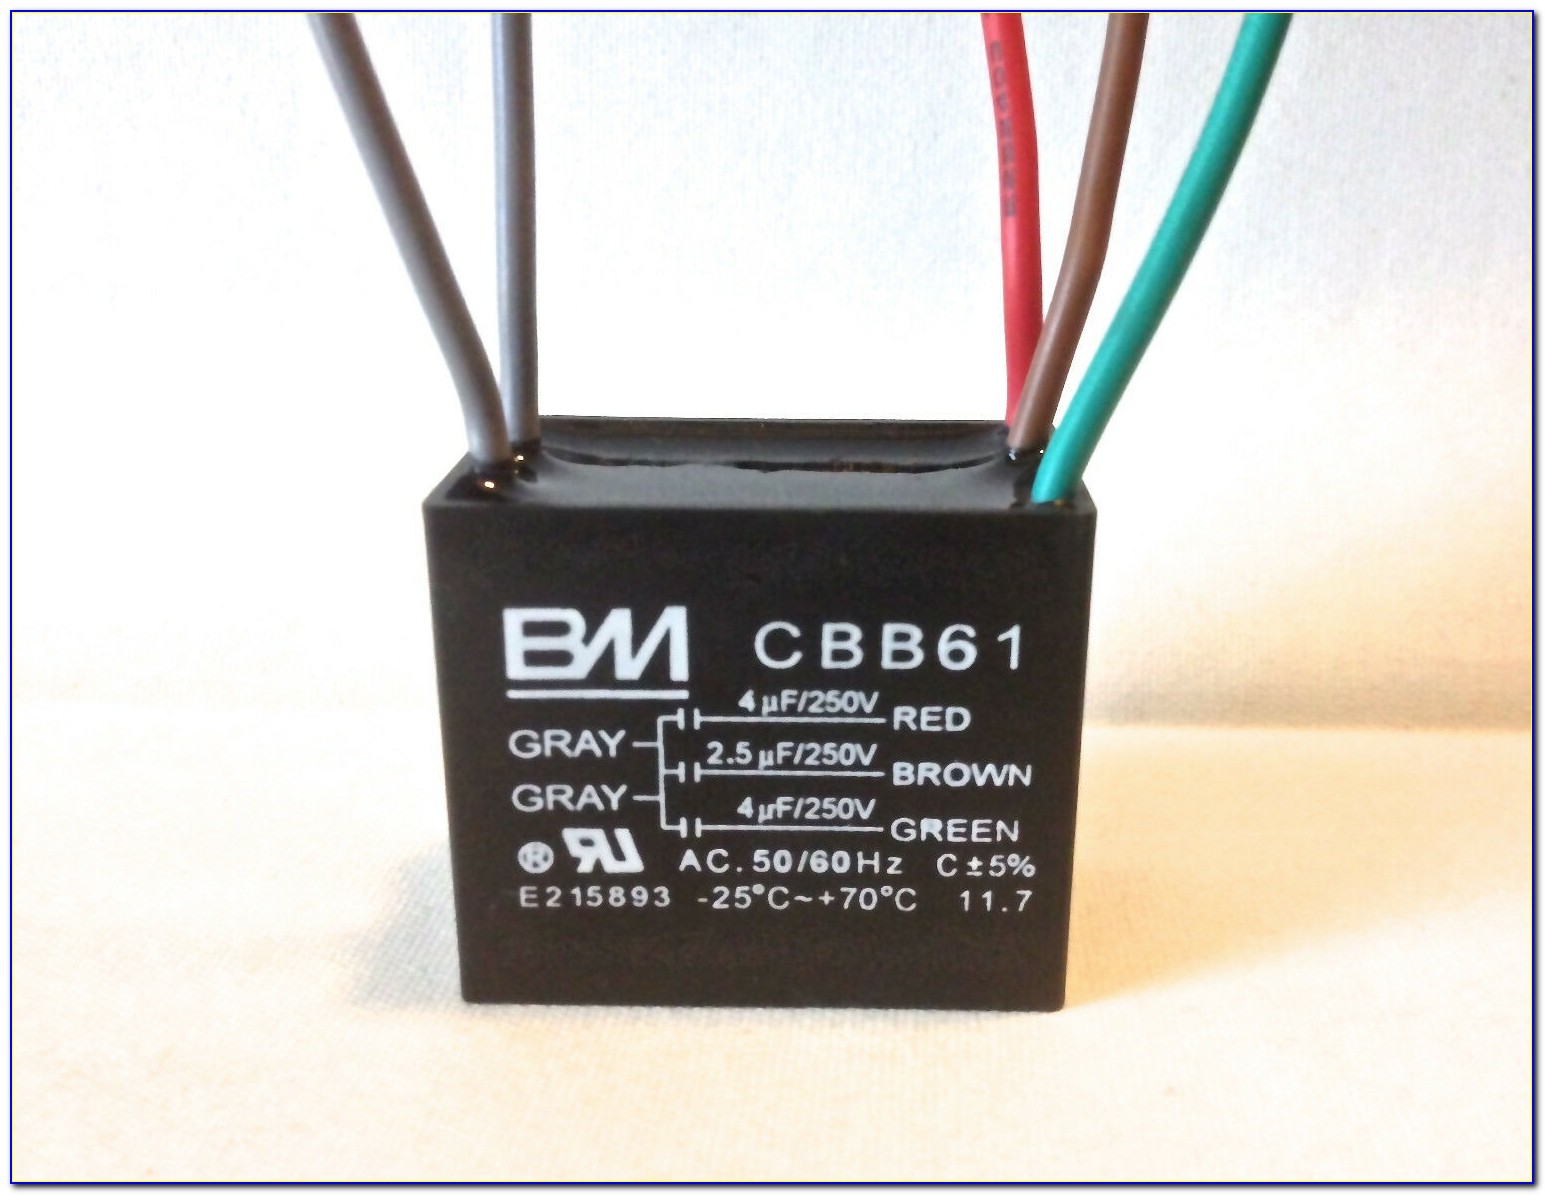 Bm Cbb61 Capacitor Wiring Diagram